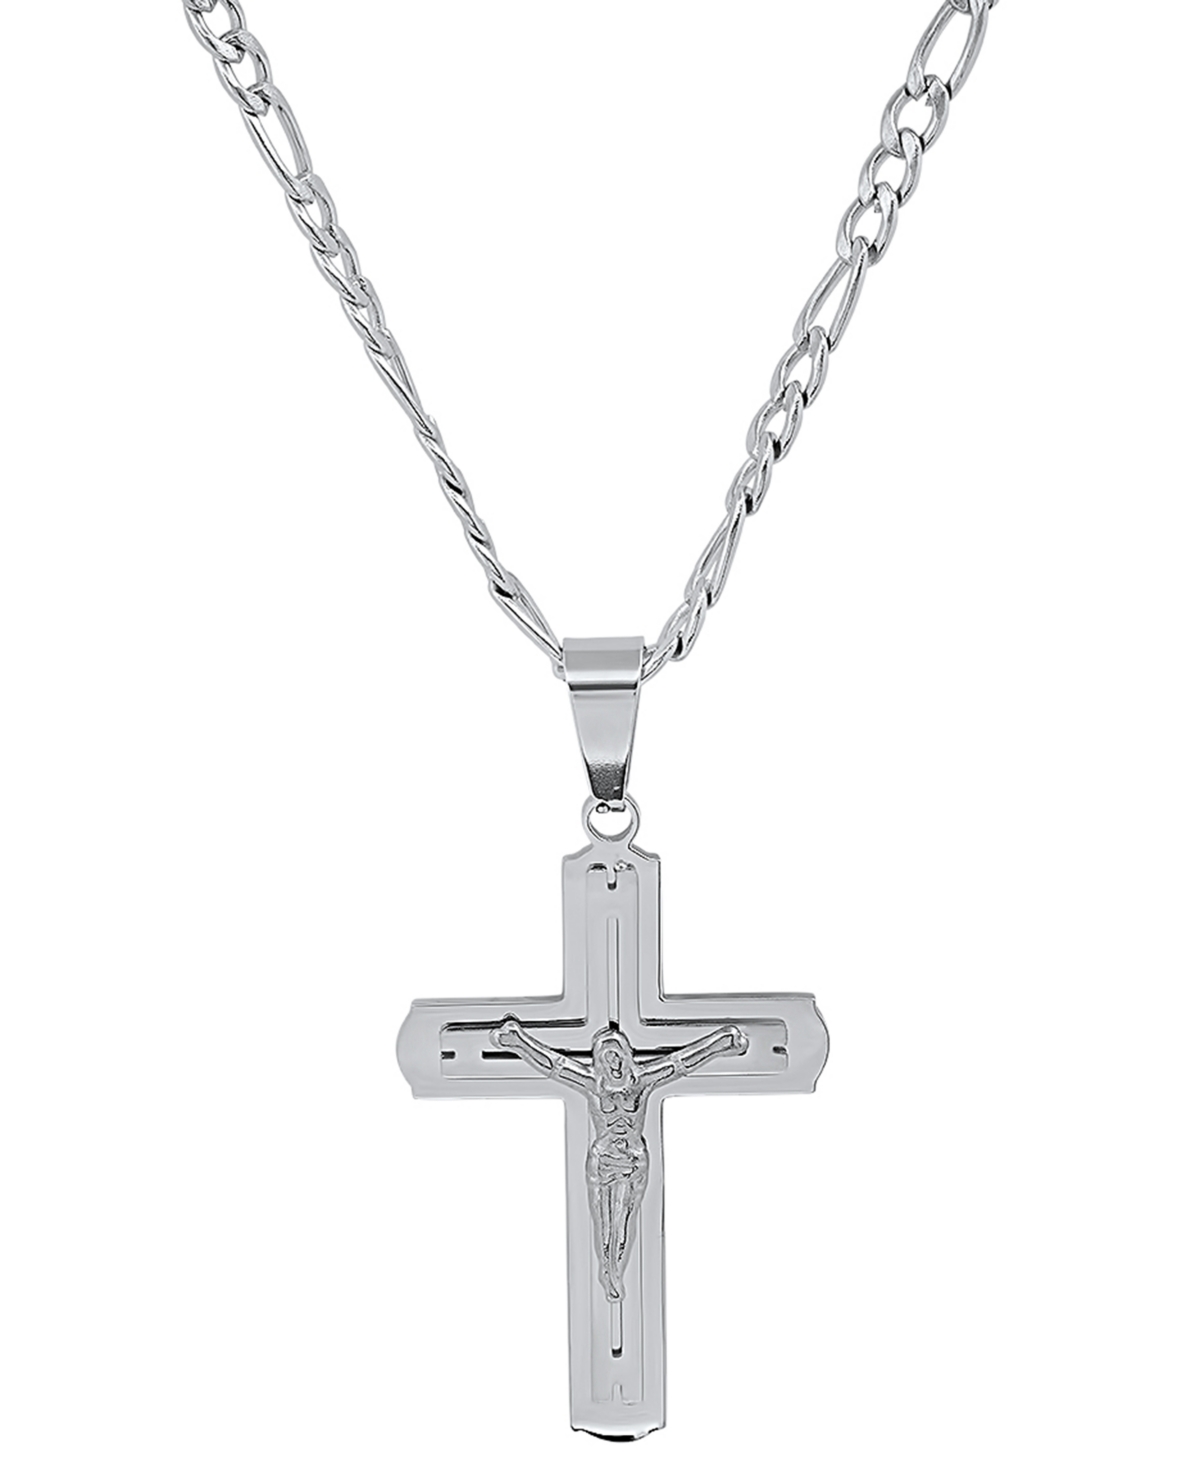 Men's Gold-Tone Crucifix Pendant 24" Necklace - Silver